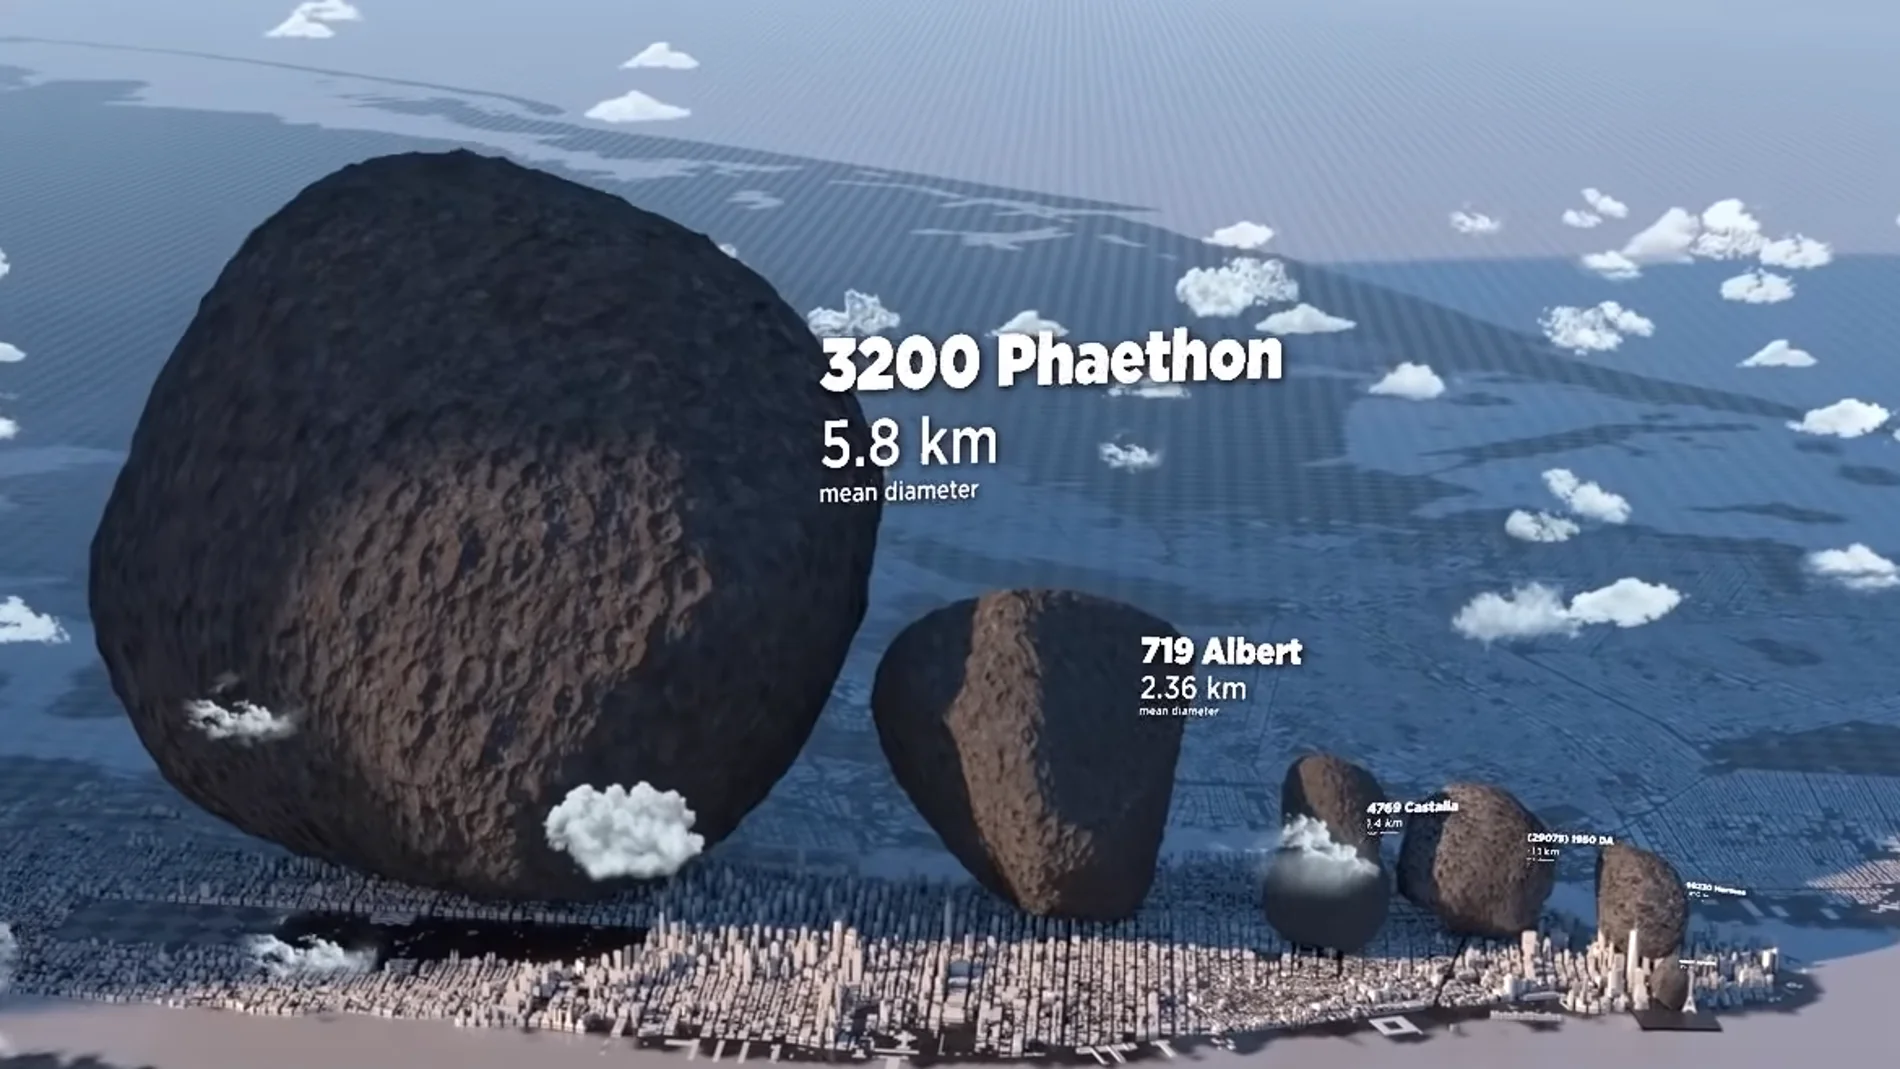 Imagen tomada del vídeo que compara el tamaño de algunos asteroides con la ciudad de Nueva York